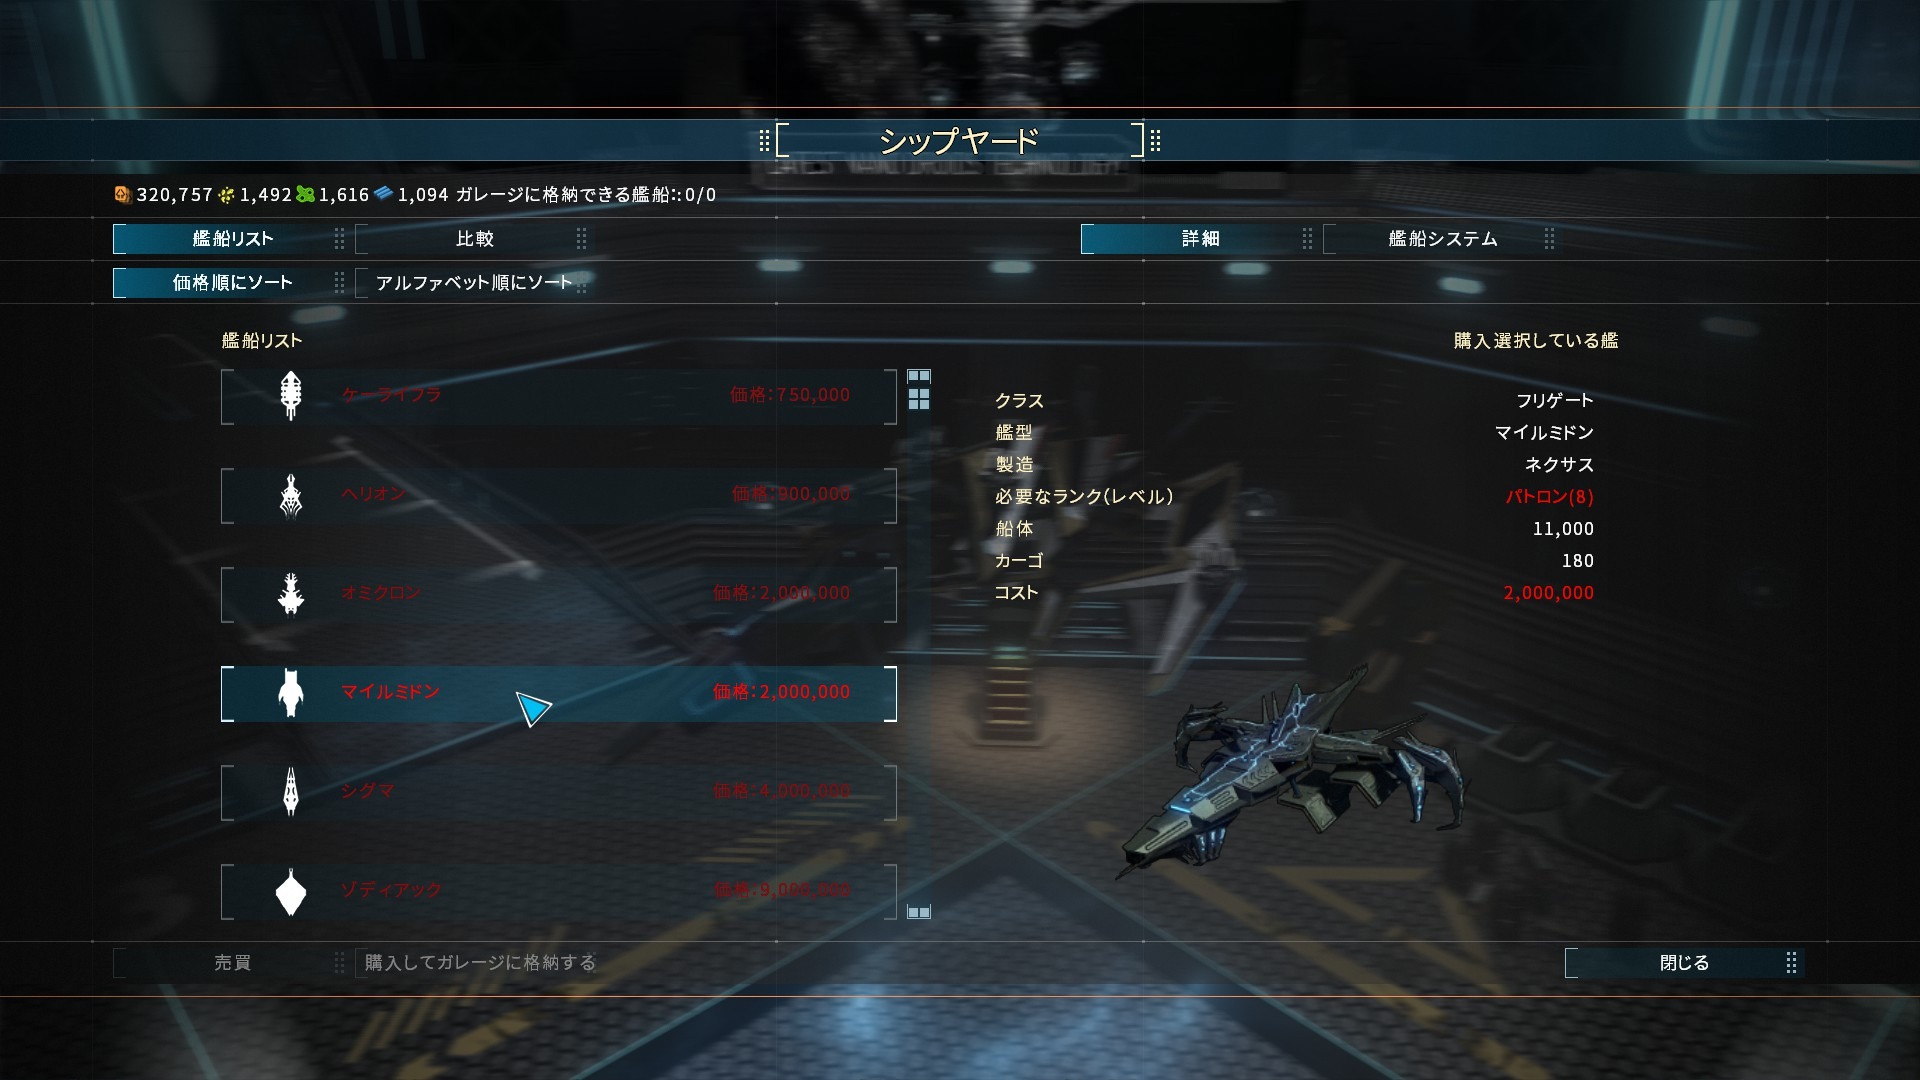 宇宙戦艦rpg Starpoint Gemini Warlords 正式な日本語対応を開始ー配信中の公式日本語化modはオフ推奨 4枚目の写真 画像 Game Spark 国内 海外ゲーム情報サイト